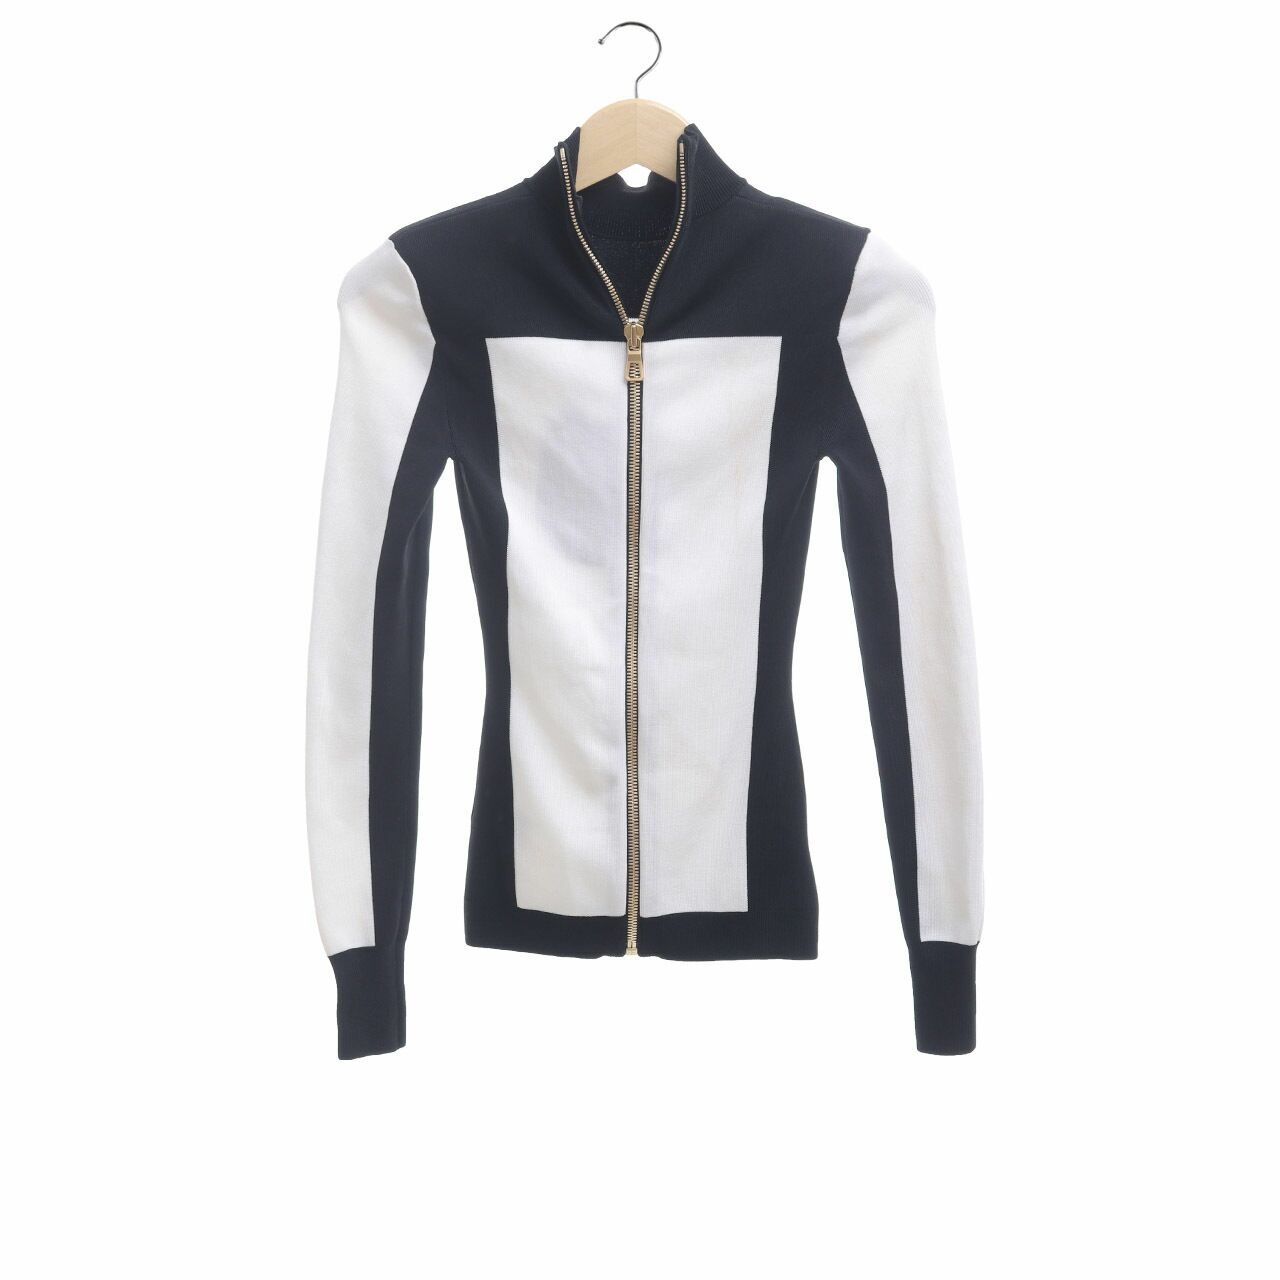 Balmain x H&M Black & White Jacket